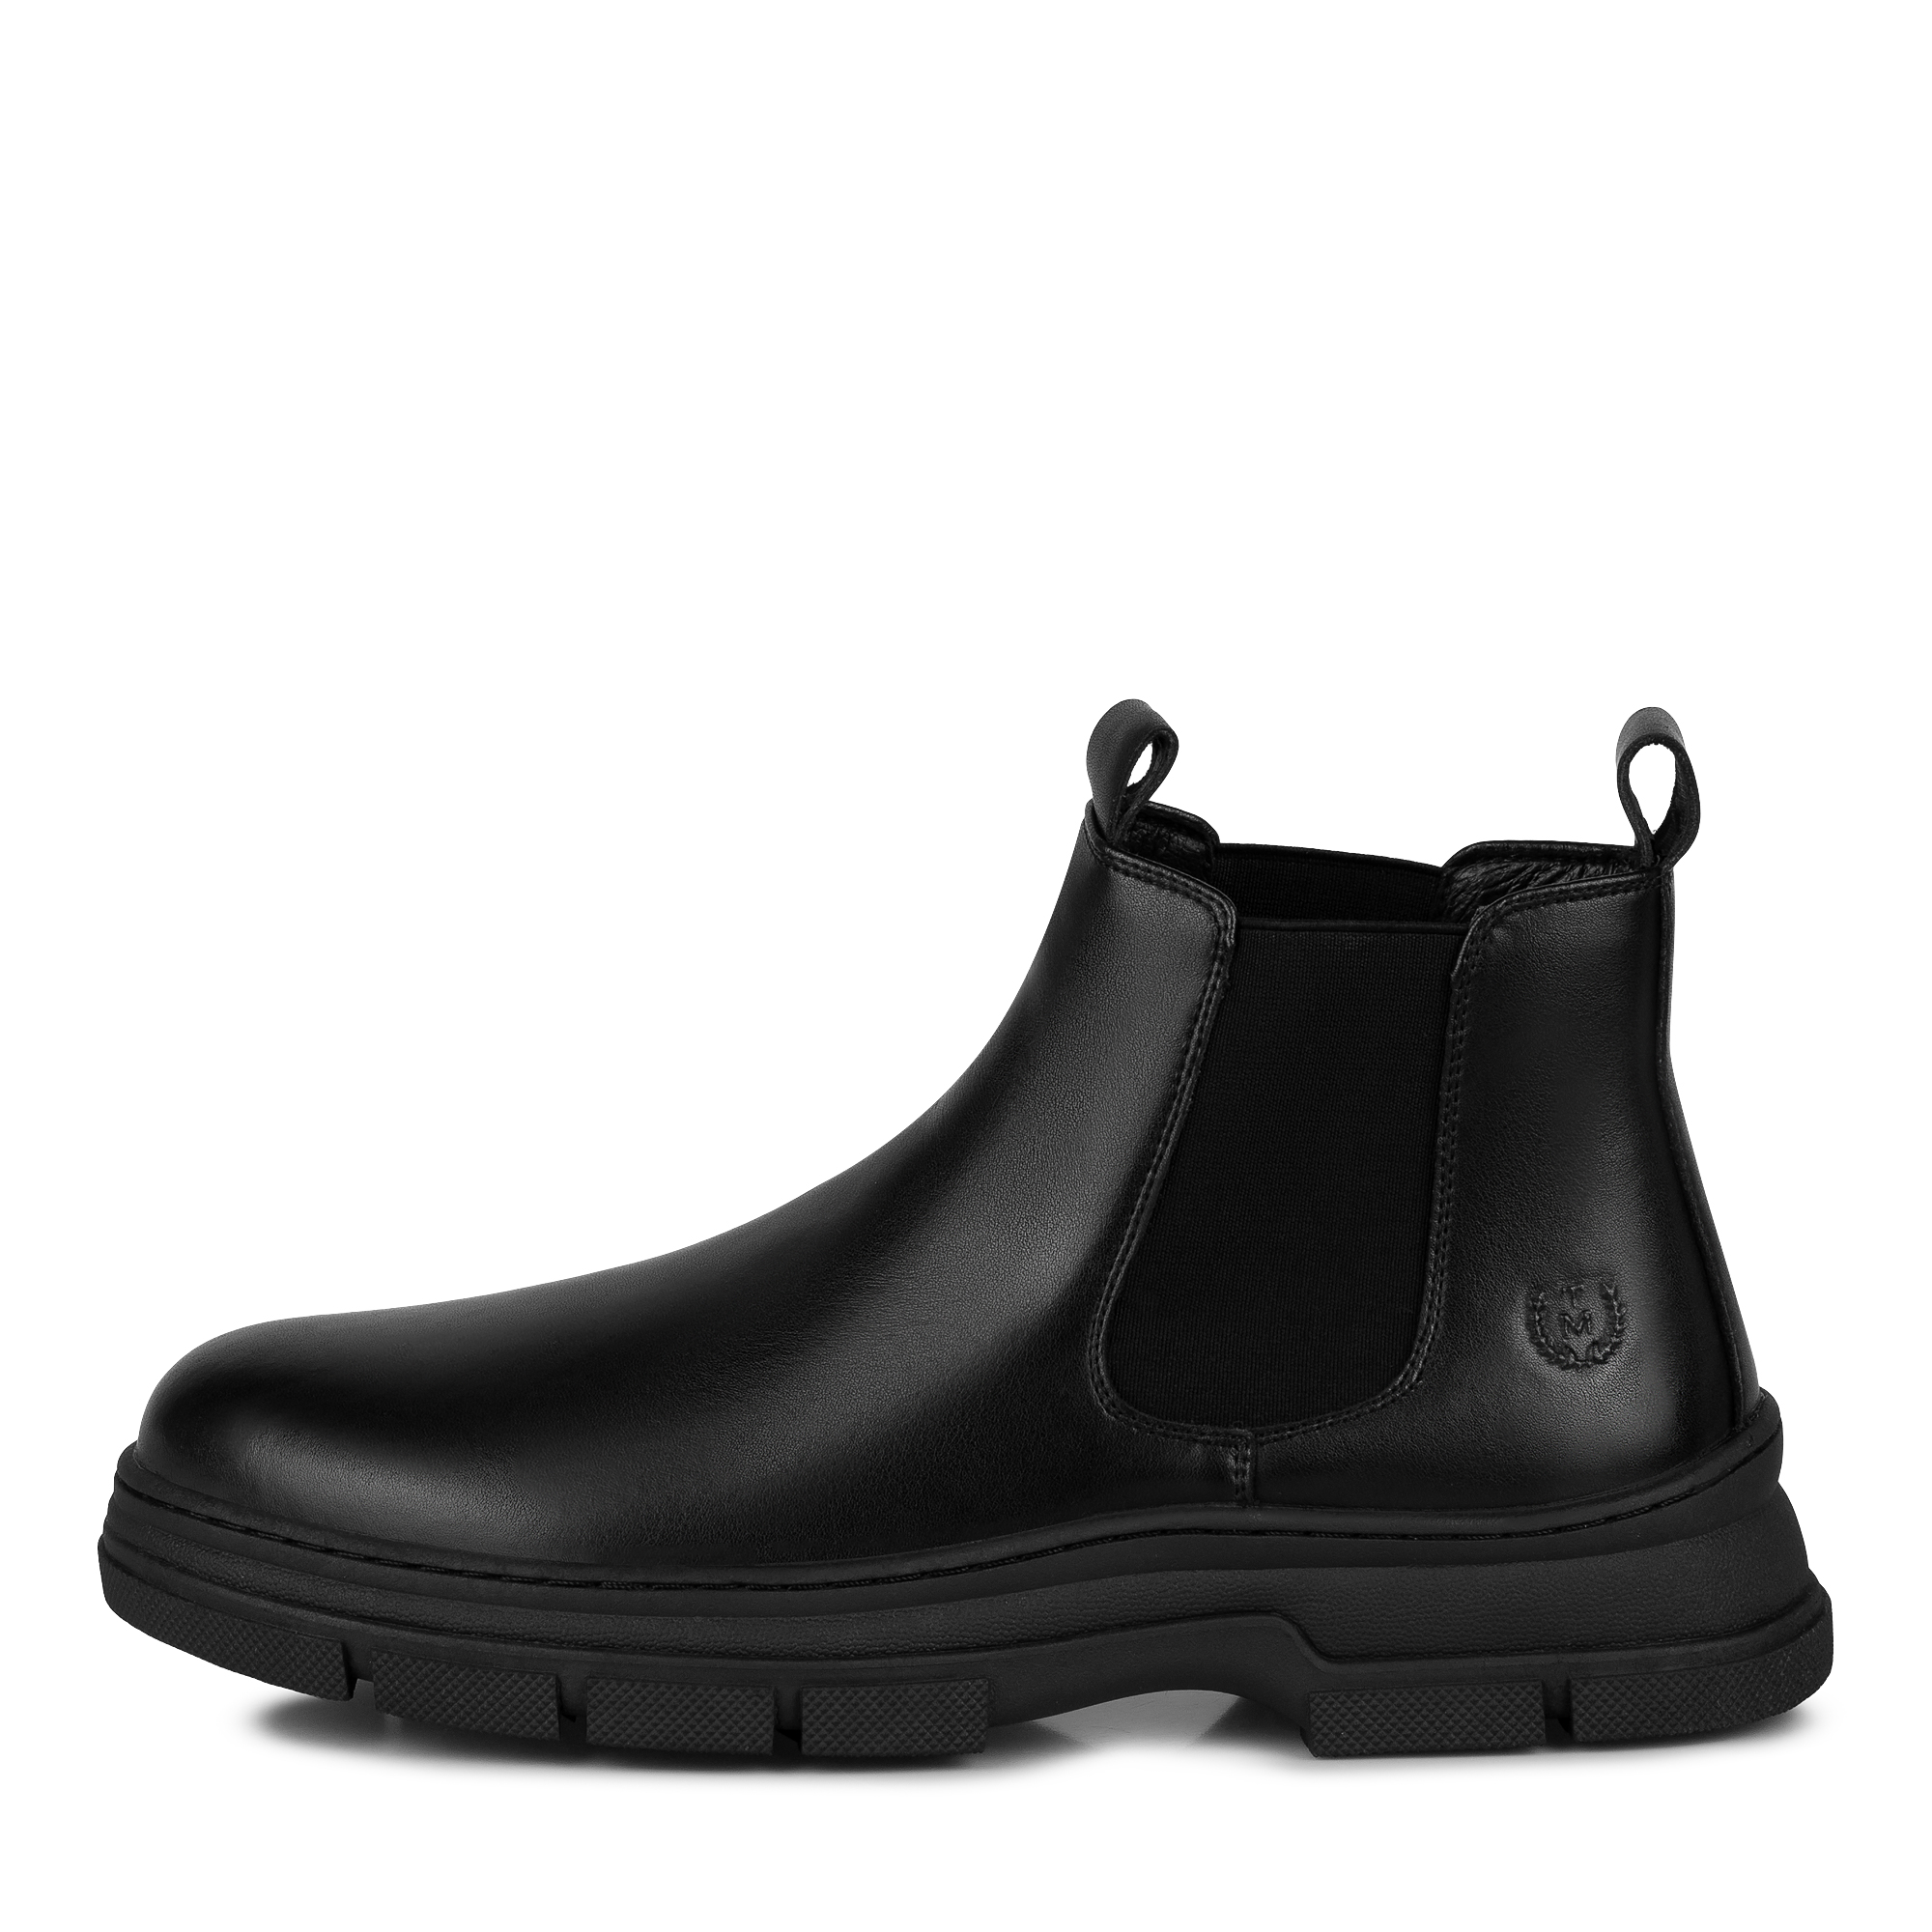 Ботинки Thomas Munz 104-3471A-74602, цвет черный, размер 42